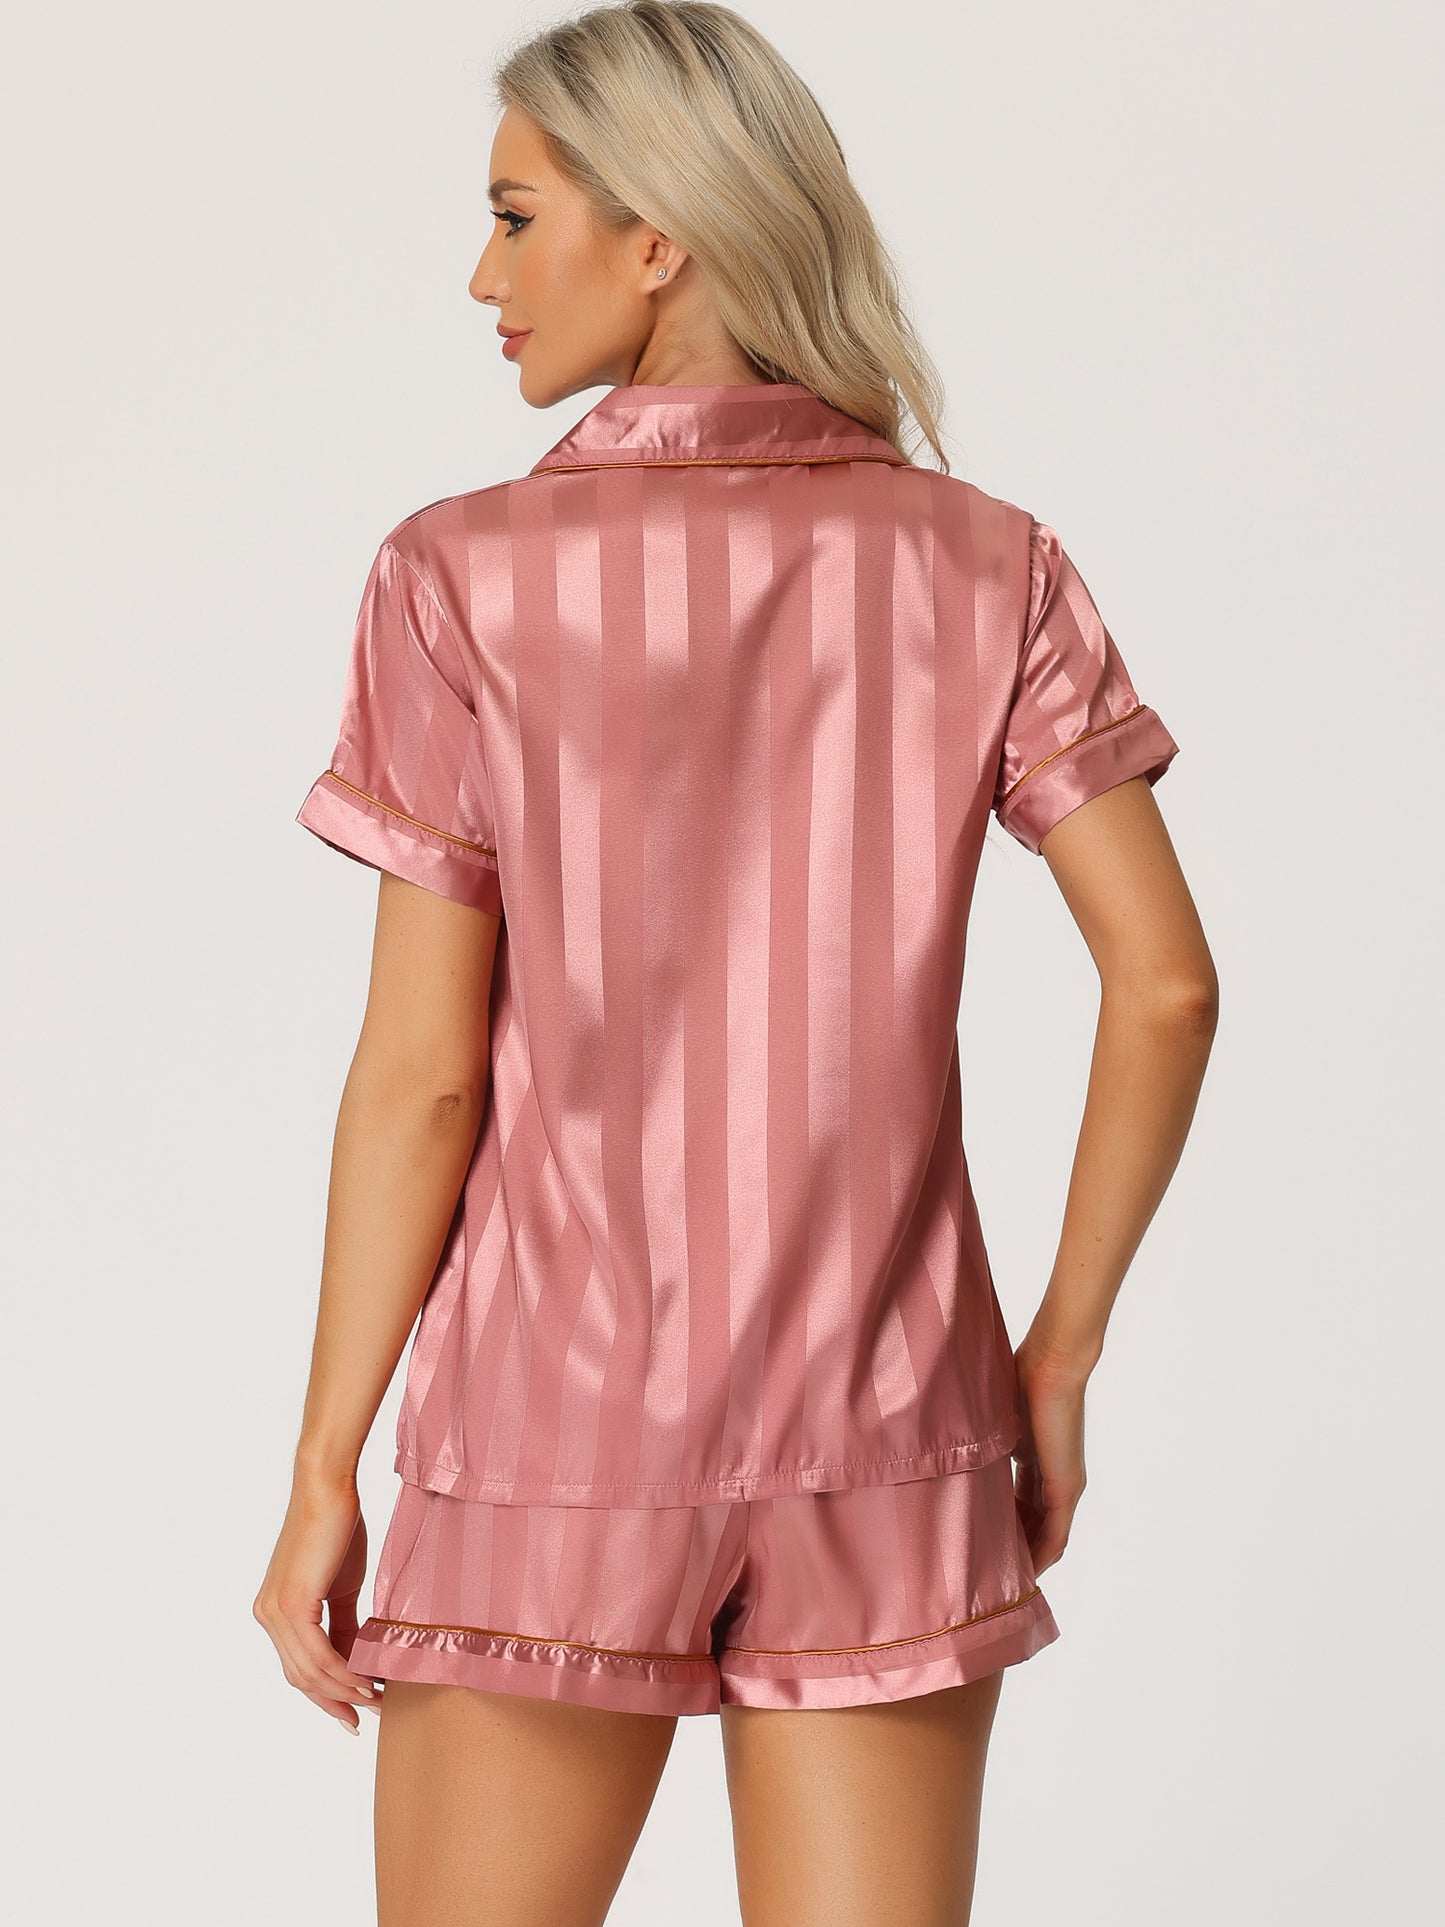 cheibear Satin 2pcs Lounge Sleepwear T-Shirt and Shorts Polka Dots Pajama Sets Dark Pink